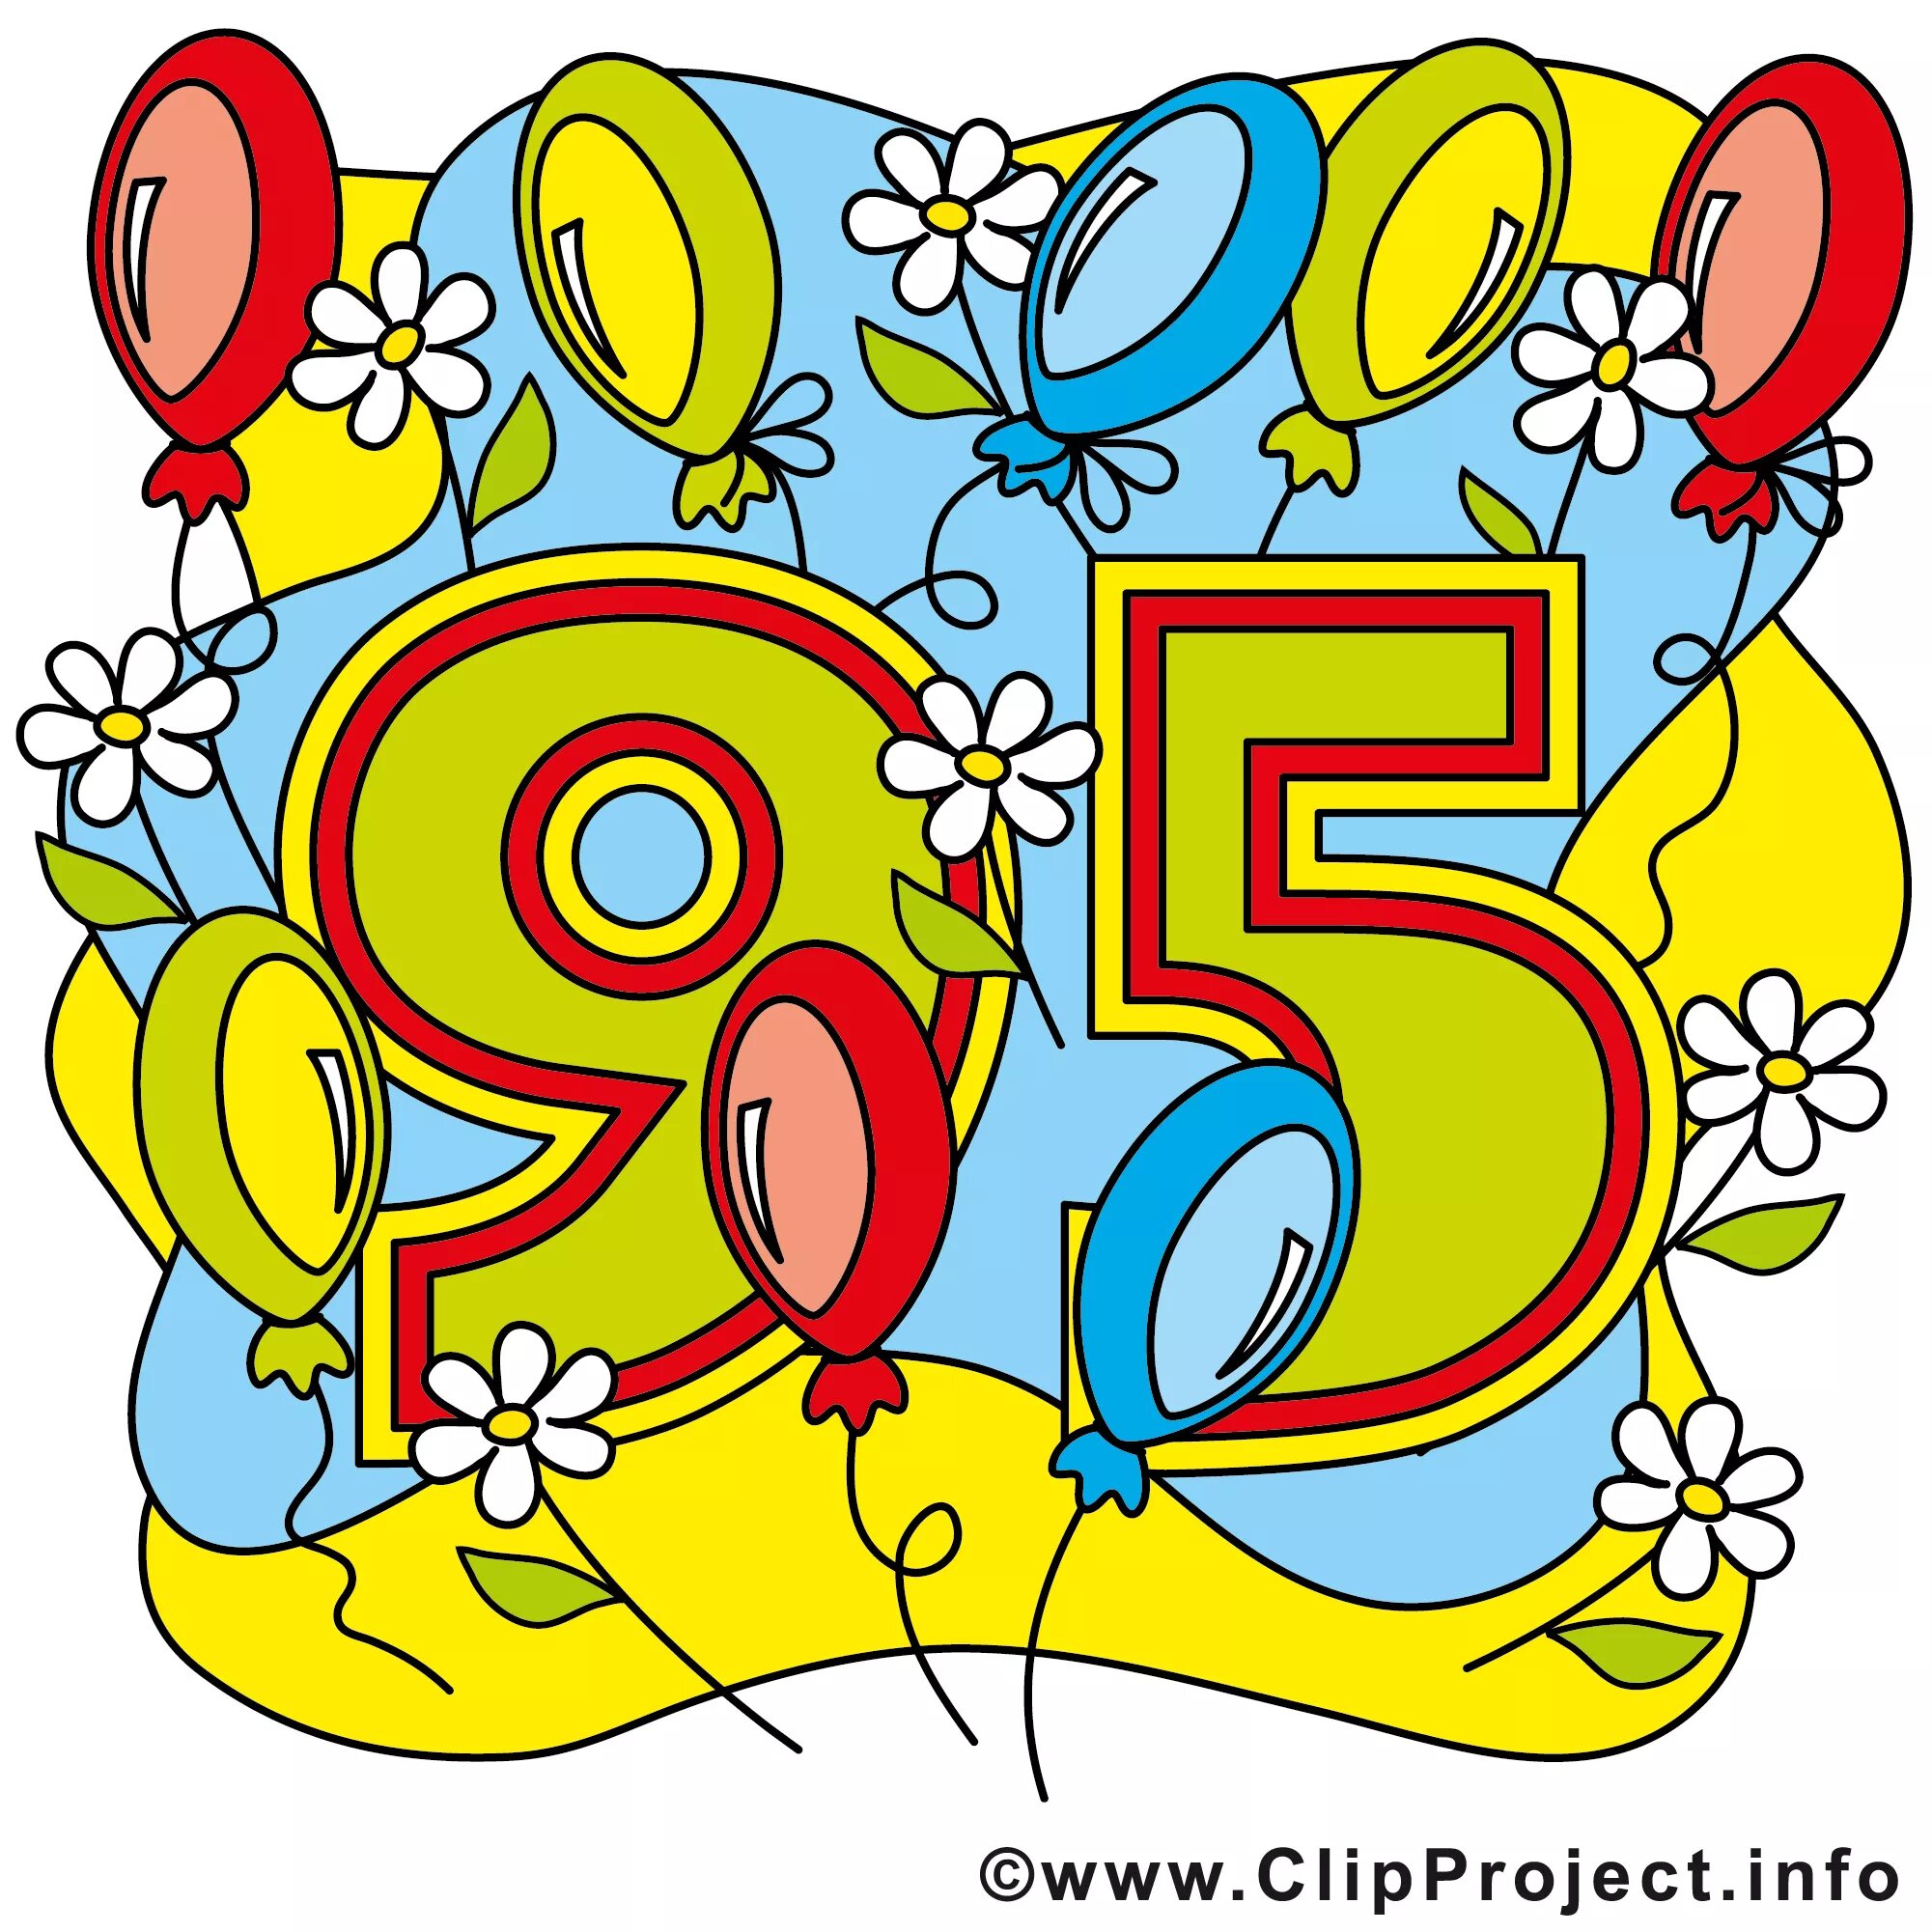 С днем рождения 95 лет. Юбилейные цифры. Открытка 95 лет с днем рождения. 95 Лет юбилей. Цифра 95 красивая.